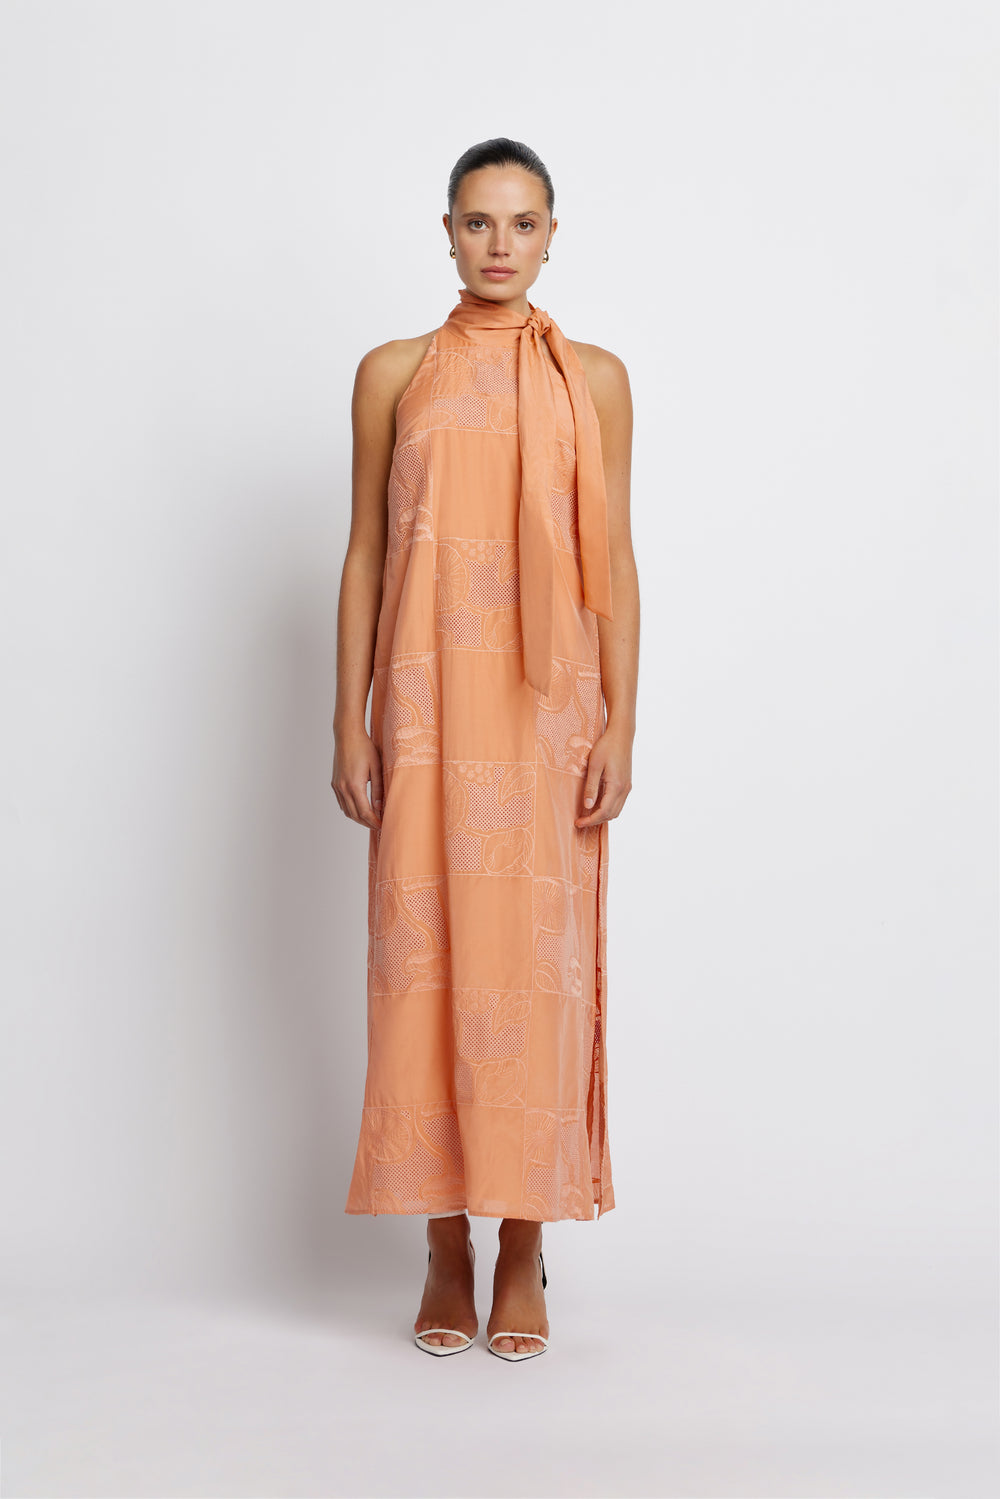 Check It Full Length Dress - Tawny Orange | Sunset Lover